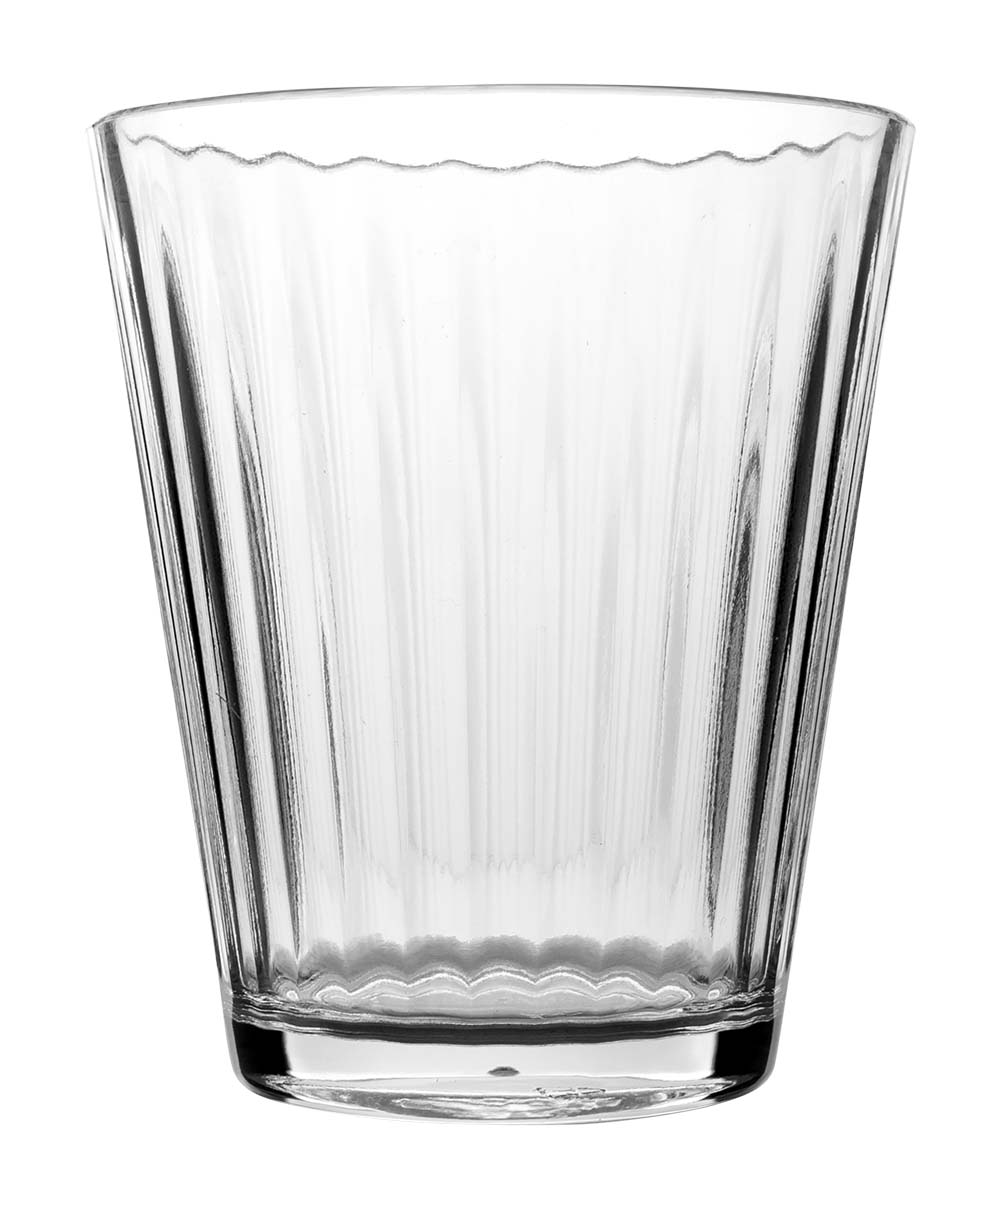 6101322 Een modern limonadeglas met speels motief. Het glas is gemaakt van 100% polycarbonaat. Daarnaast is deze kraswerend, van lichtgewicht en vaatwasmachinebestendig.